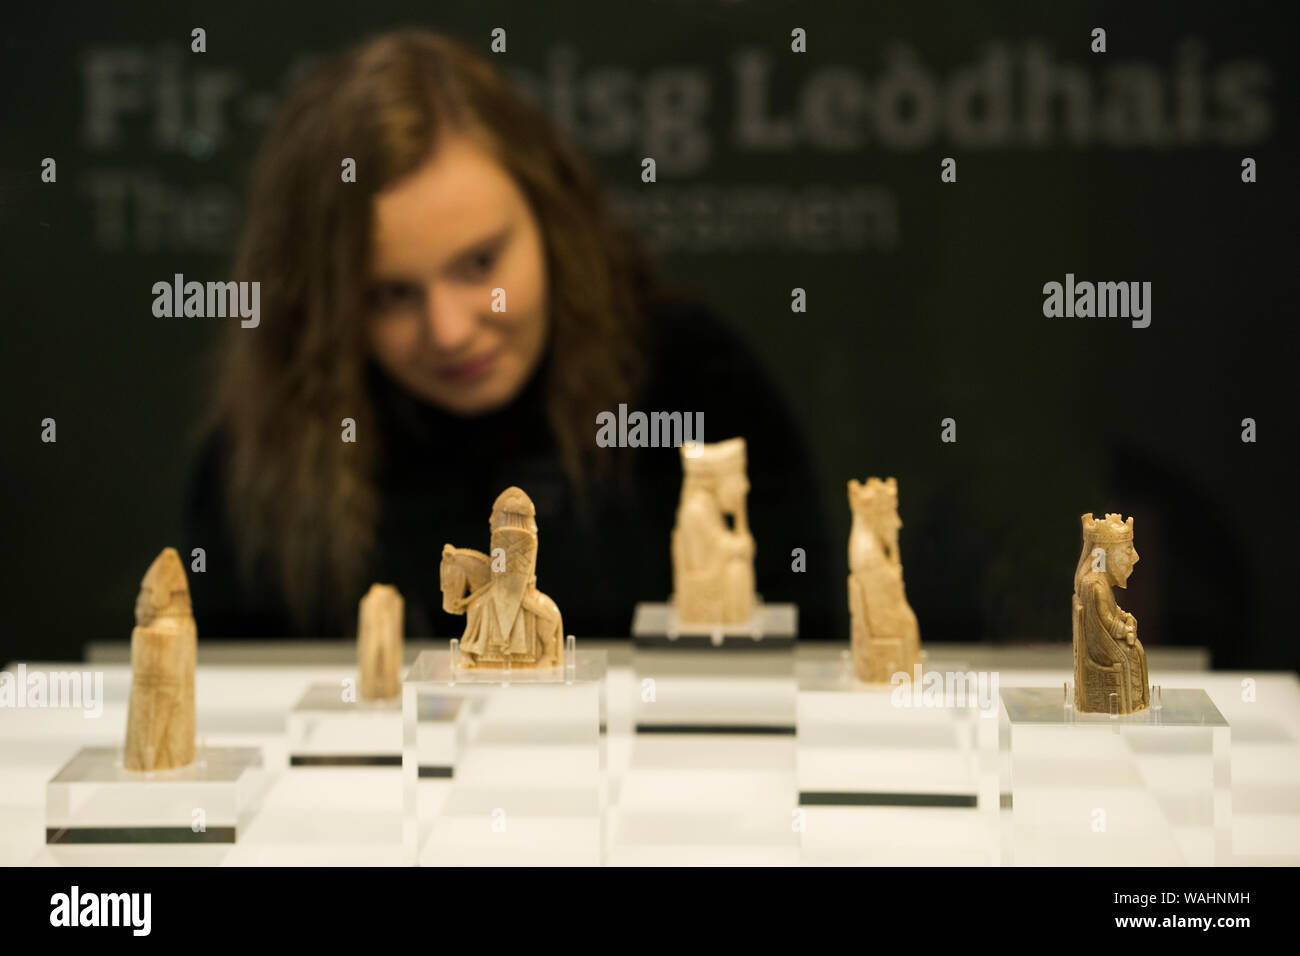 Adolescente mira las originales piezas de ajedrez desde un auténtico juego  de ajedrez tallados de marfil morsa que derivó de un naufragio en el mar  eran discove Fotografía de stock - Alamy